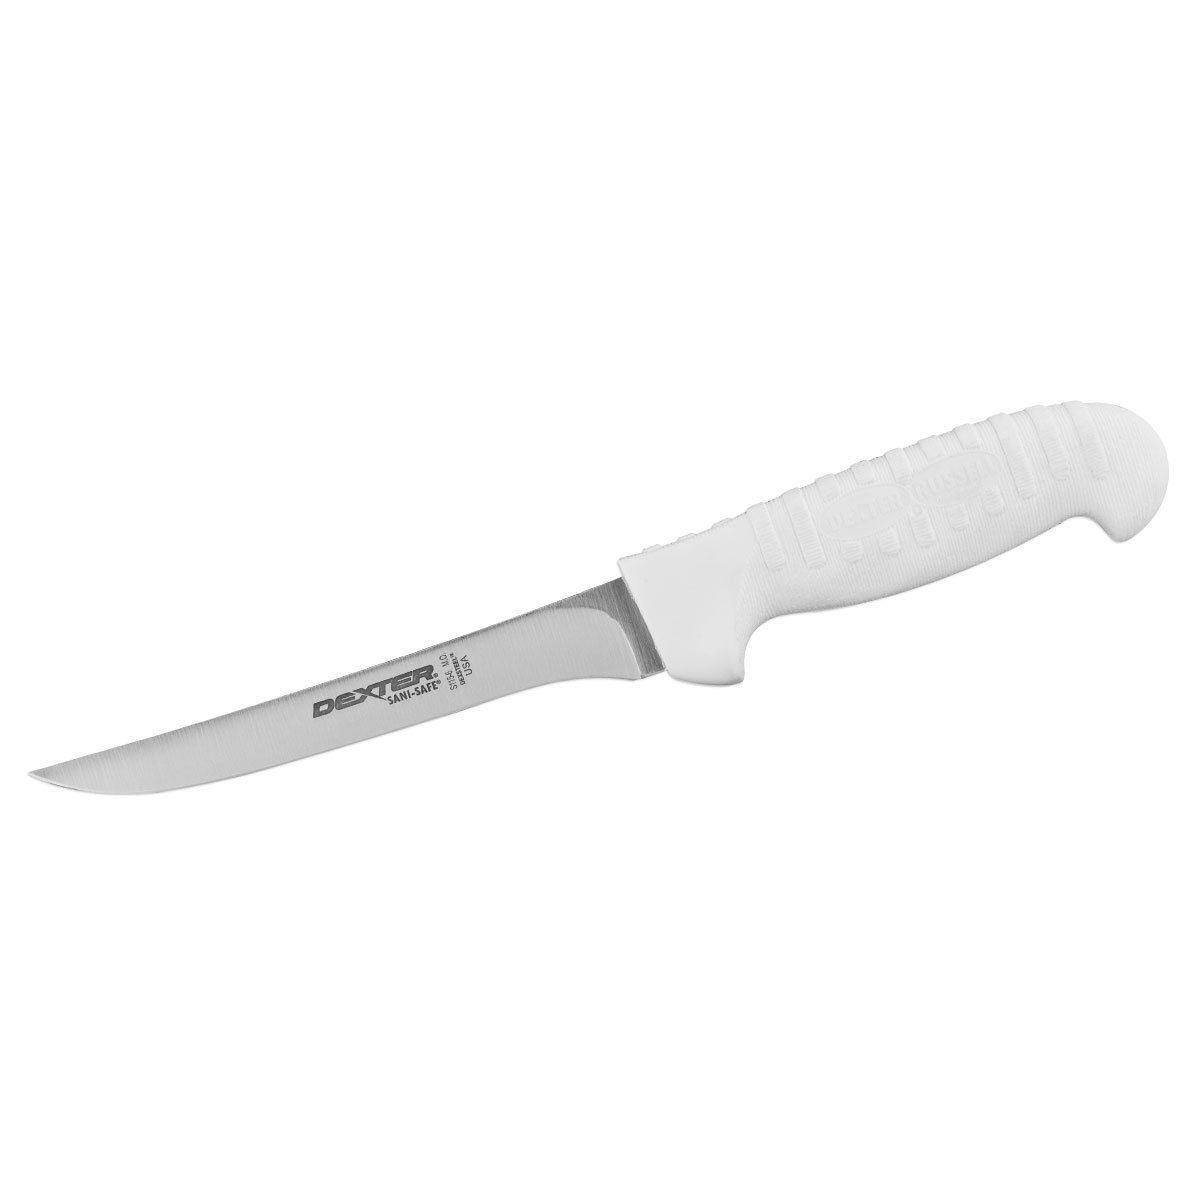 Dexter Boning Knife, 15cm (6) - Tapered - White